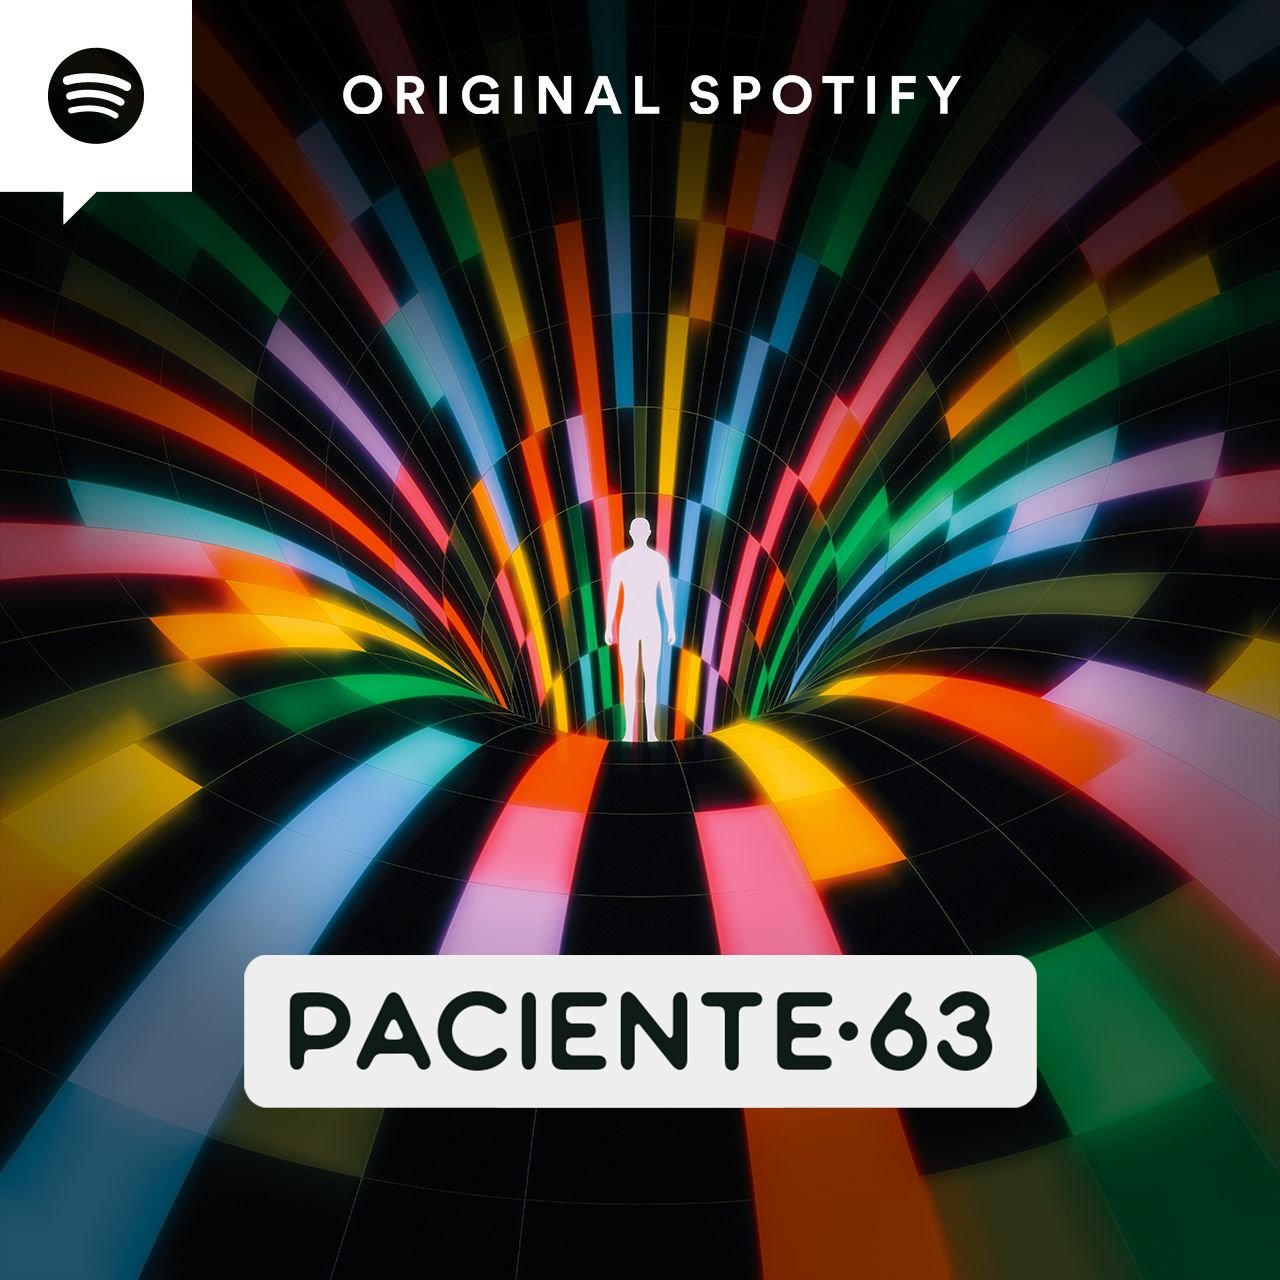 Paciente 63 | Nova áudiossérie com elenco de peso estreia no Spotify